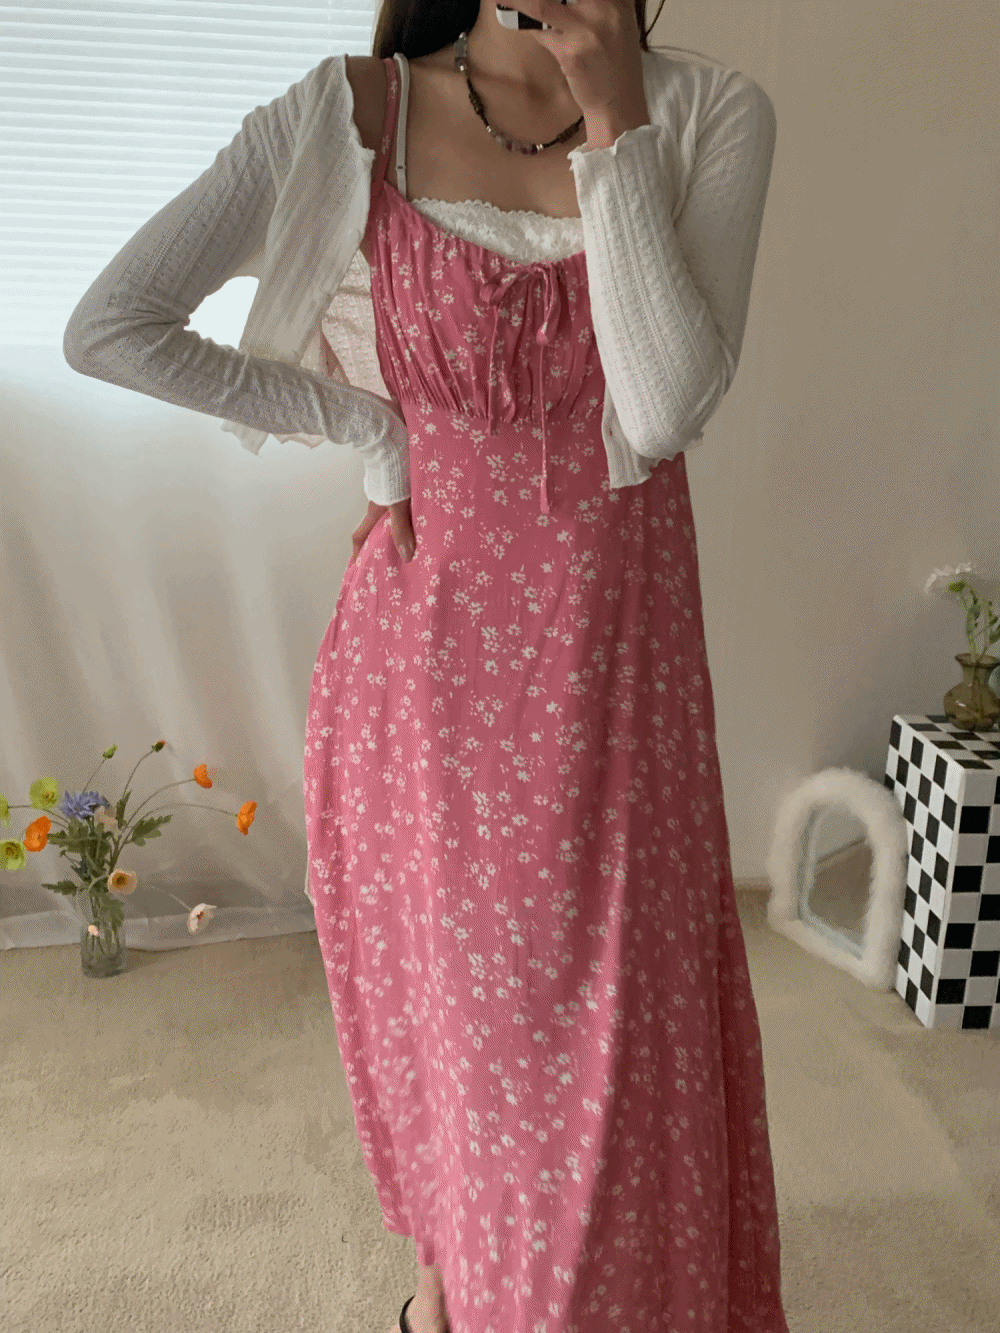 [Dress] May lily floral ribbon dress : pink